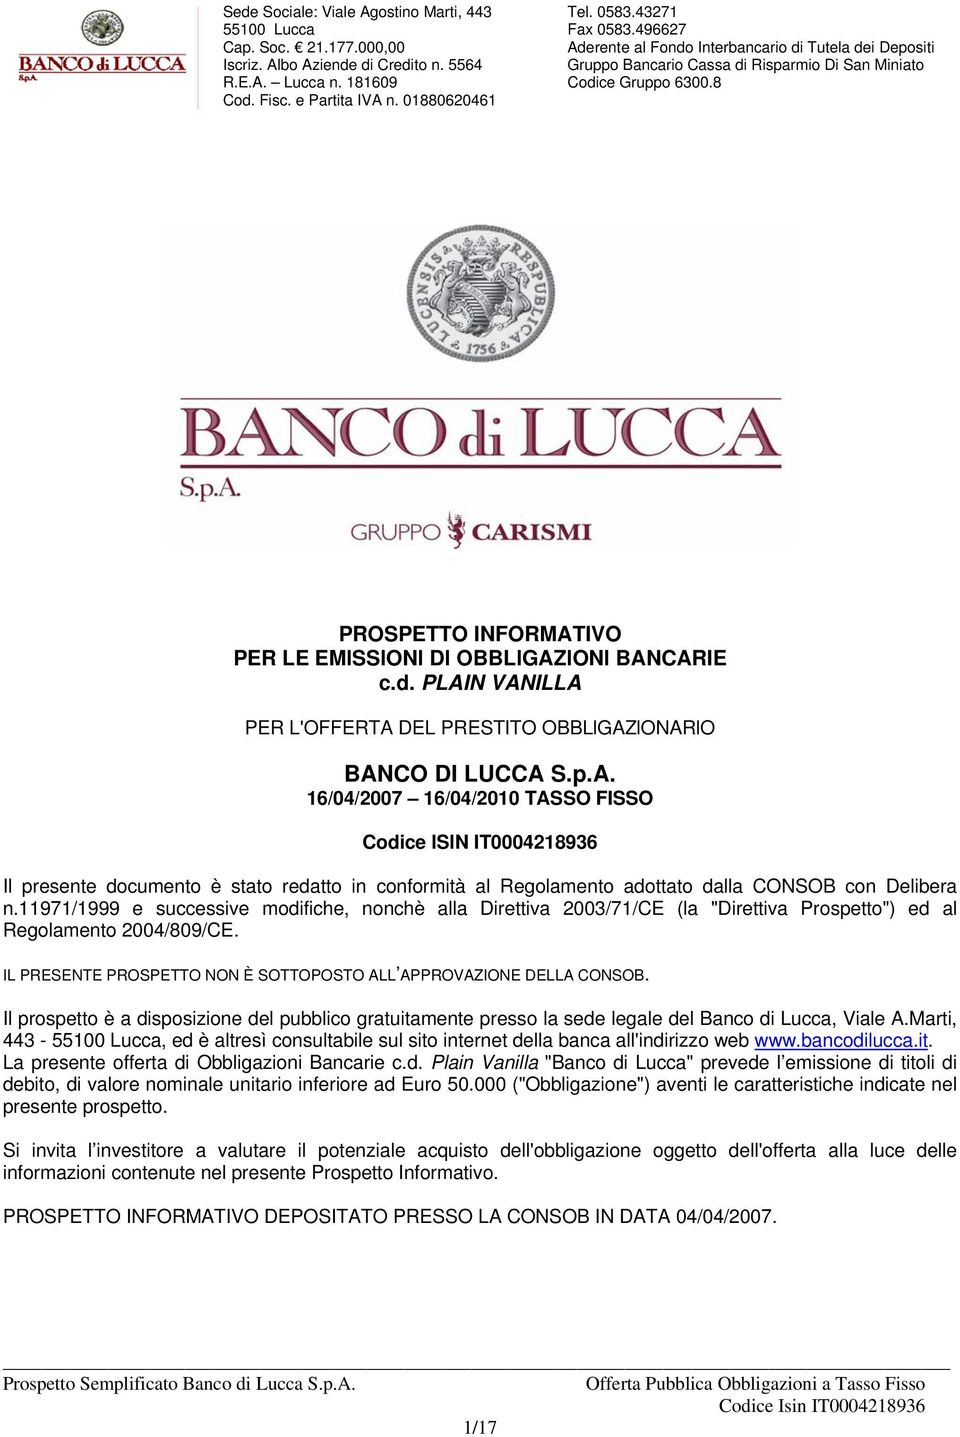 Il prospetto è a disposizione del pubblico gratuitamente presso la sede legale del Banco di Lucca, Viale A.Marti, 443 -, ed è altresì consultabile sul sito internet della banca all'indirizzo web www.